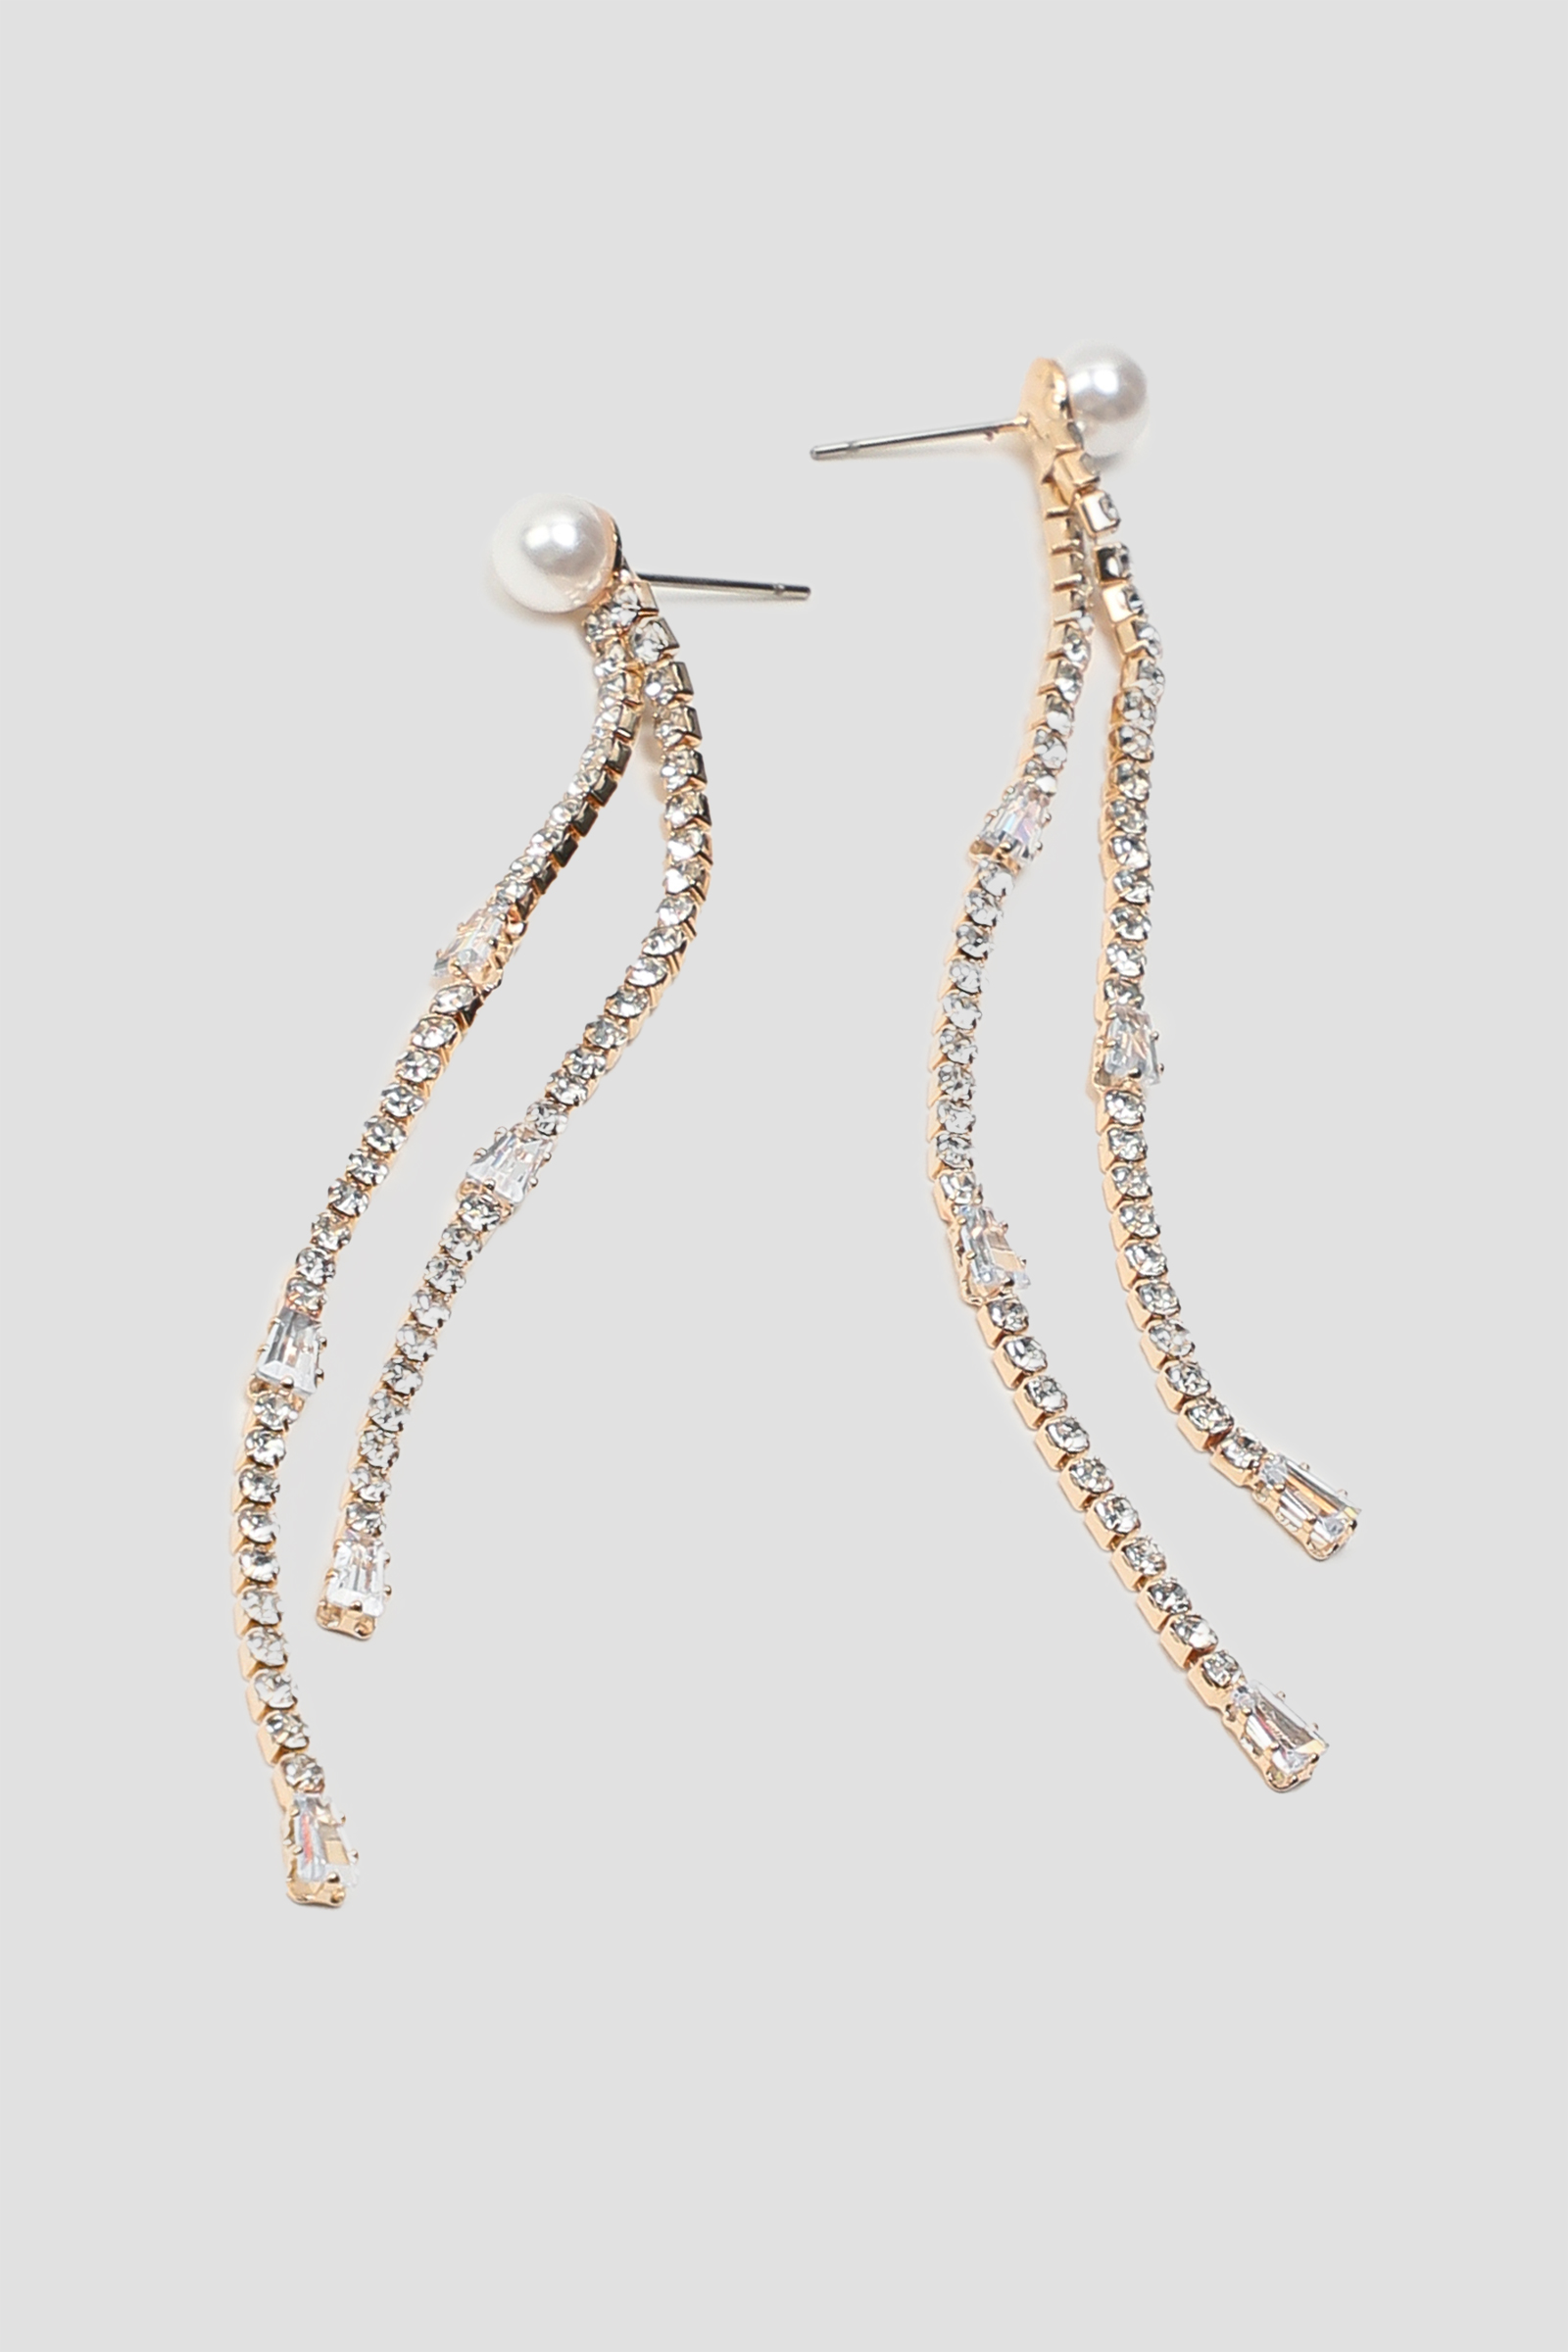 Ardene Stone & Pearl Drop Earrings in Gold | Stainless Steel